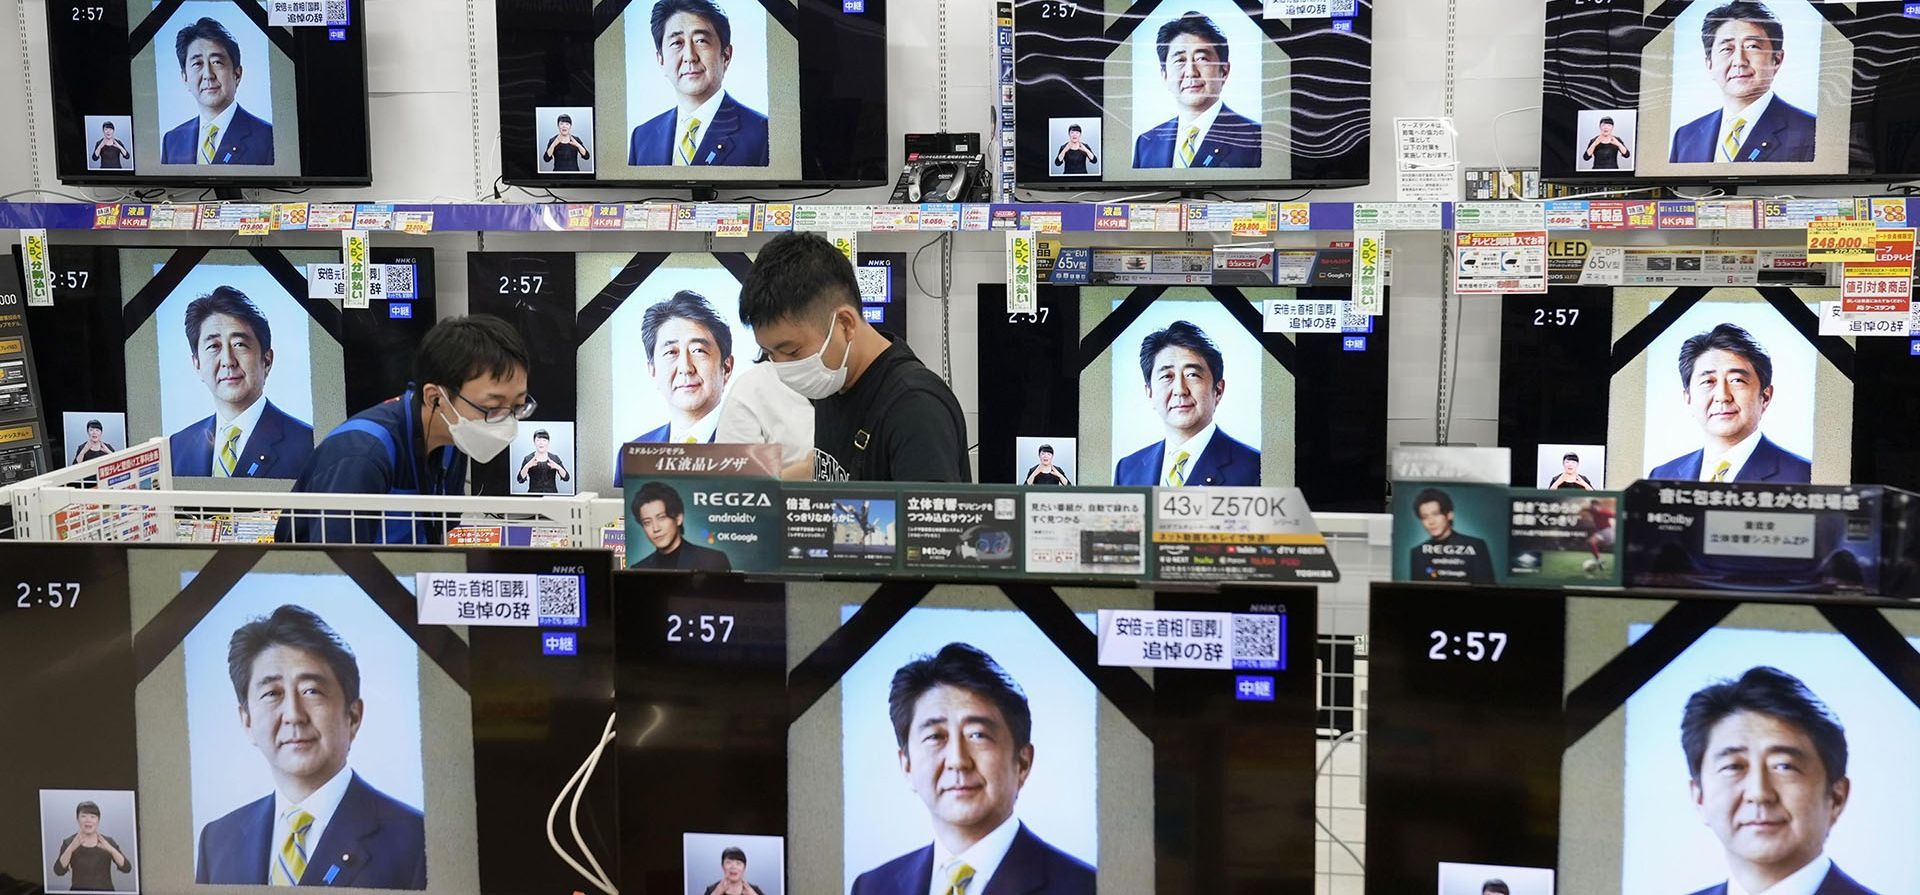 Las pantallas de televisión muestran los programas de noticias que informan sobre el funeral de estado del ex primer ministro japonés Shinzo Abe, en Fukuoka, en el oeste de Japón, el martes 27 de septiembre de 2022. 